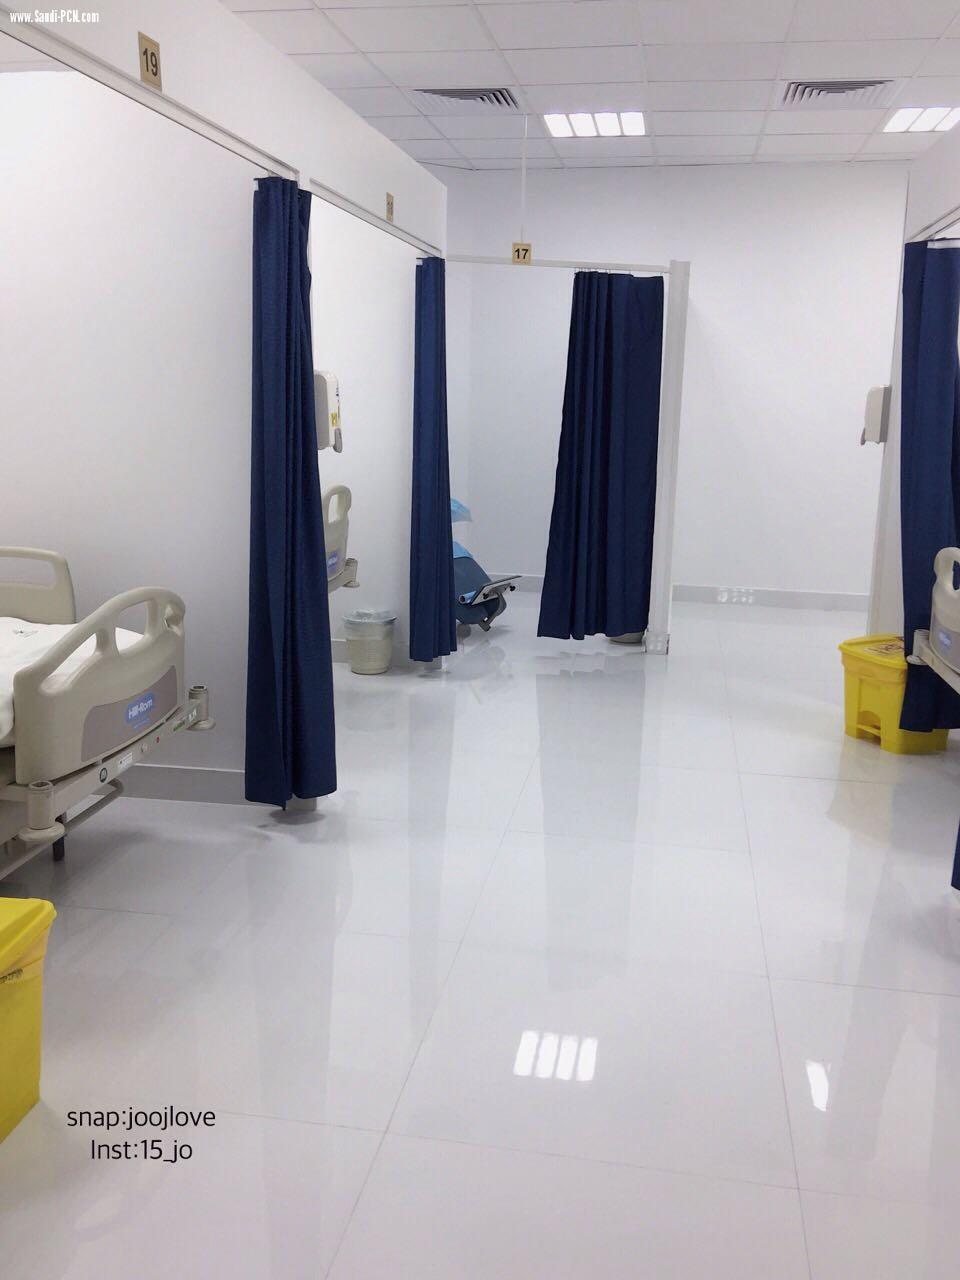  مدير عام الشؤون الصحية يفتتح وحدة أمراض الدم و الأورام بمستشفى الملك فهد بالمدينة المنورة